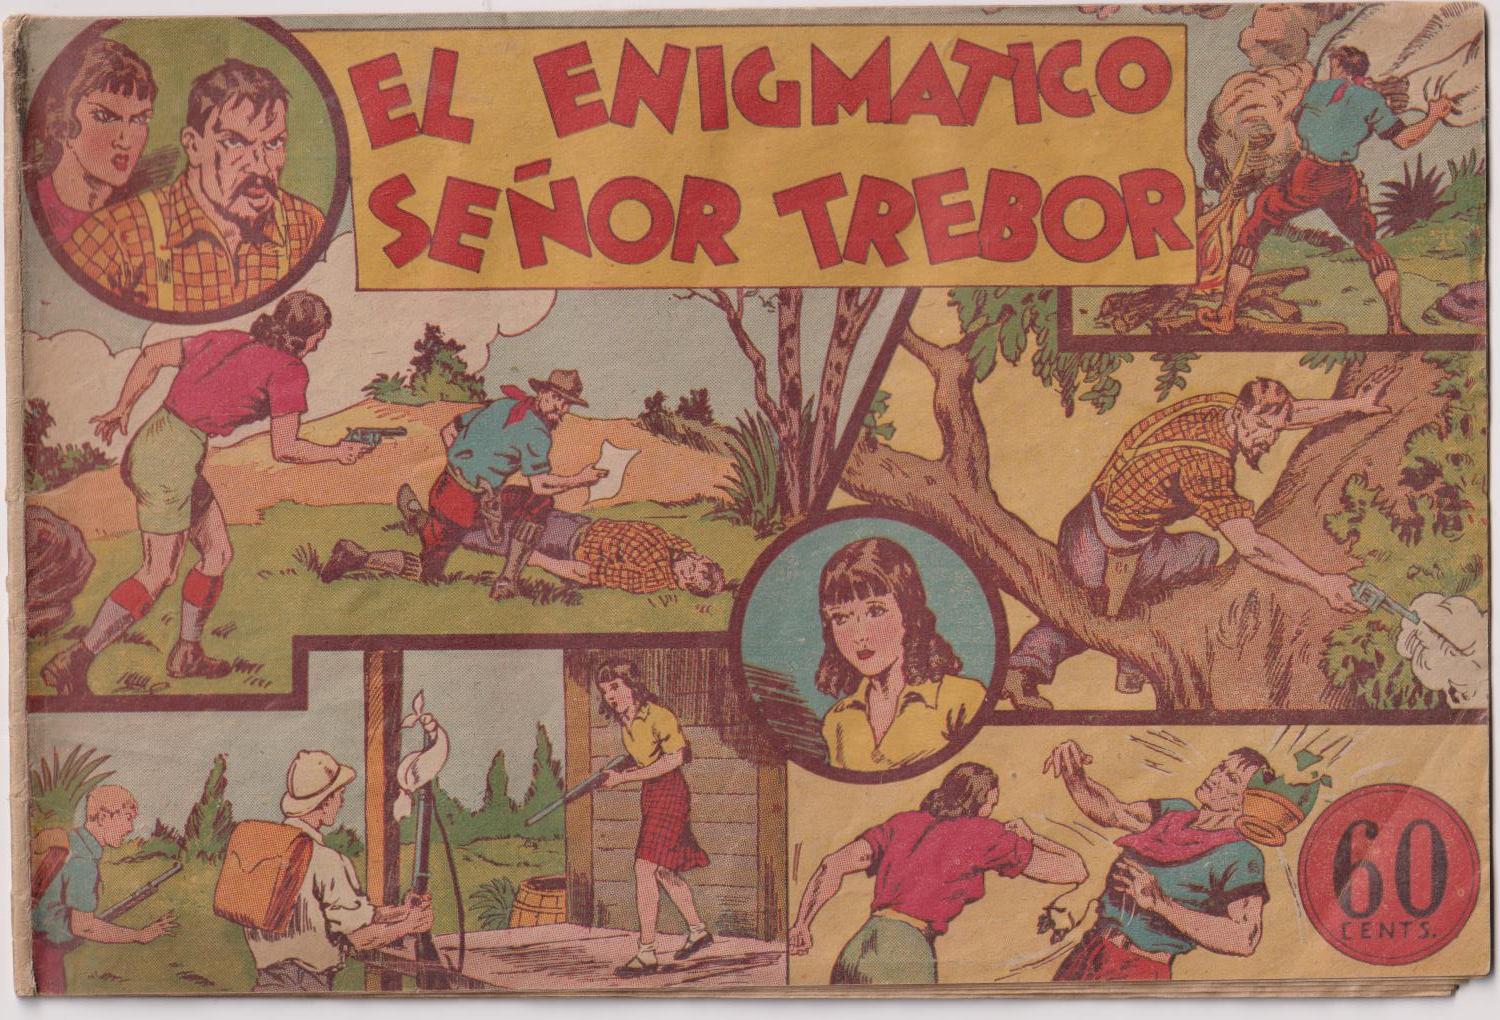 Jorge y Fernando nº 8. El enigmático Señor Trebor. Hispano Americana 1940